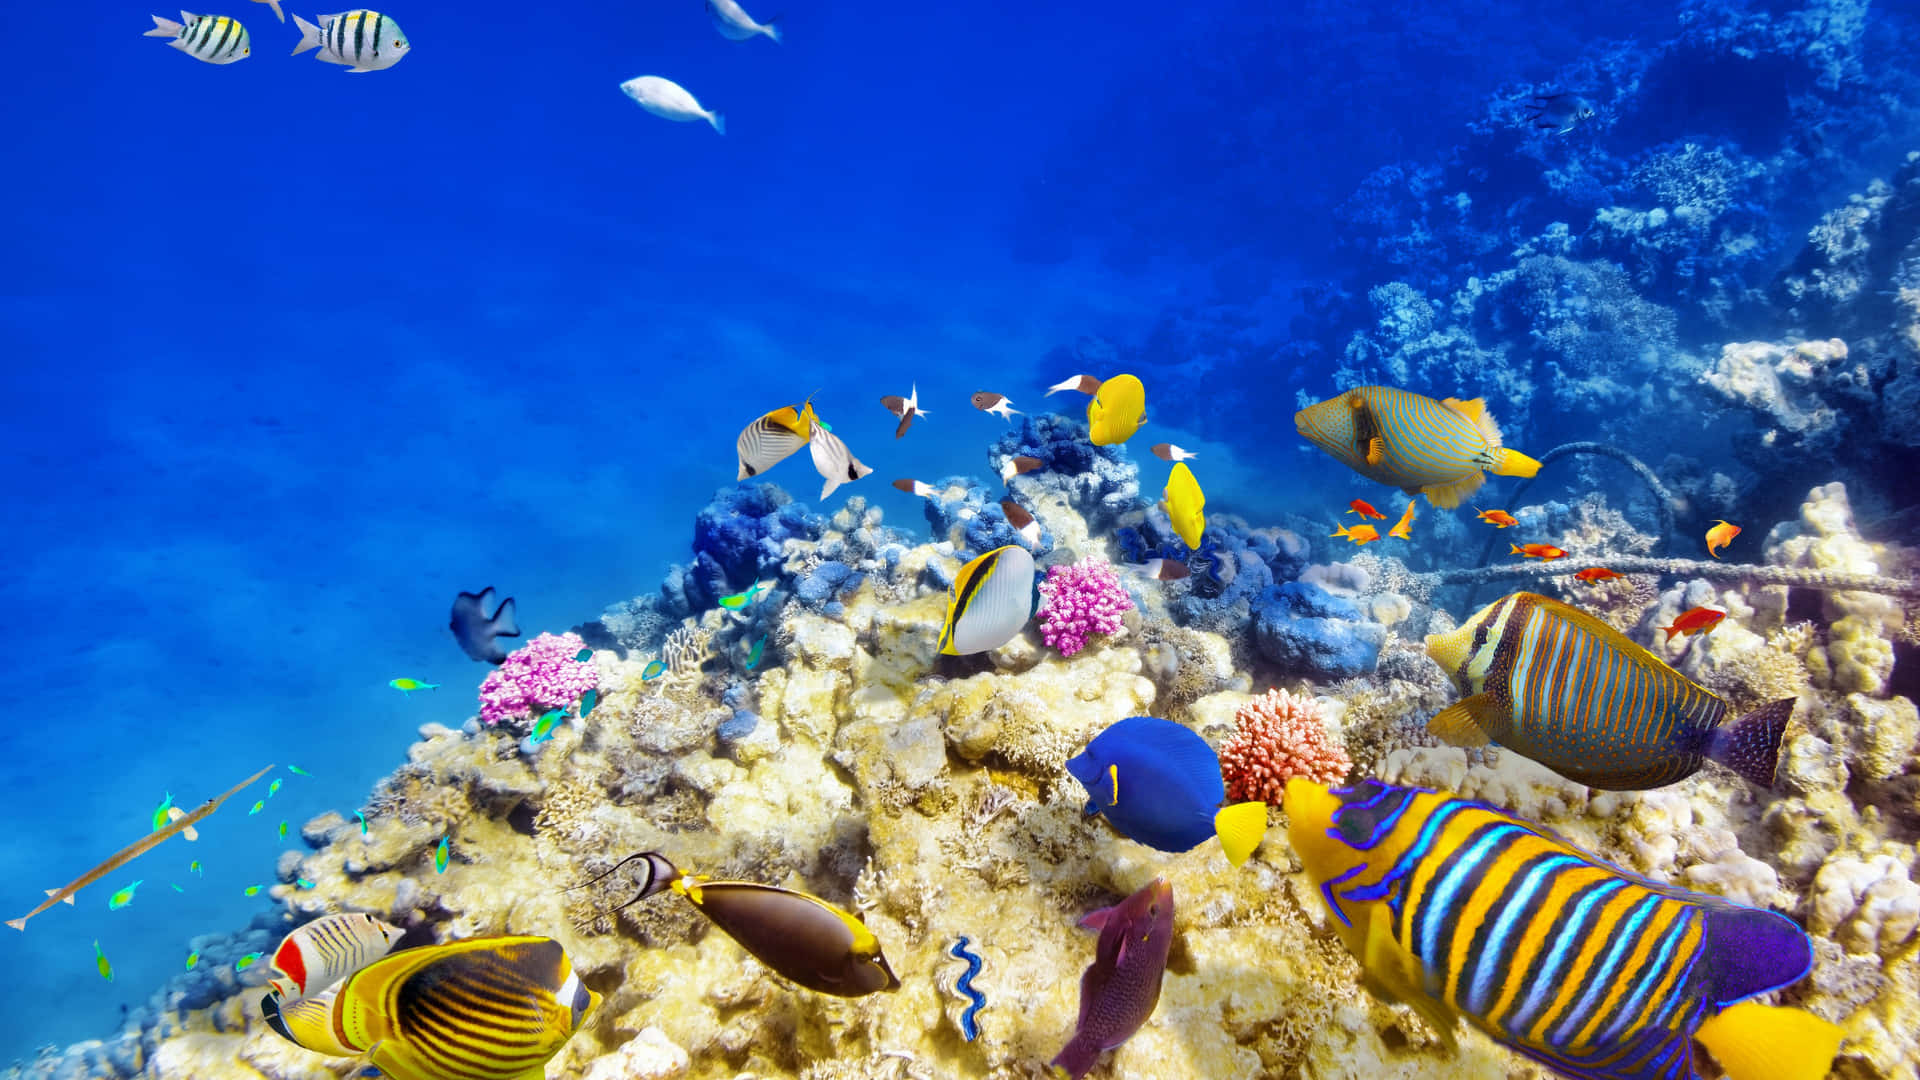 Et undersøisk verden af livlig koral og havdyr.